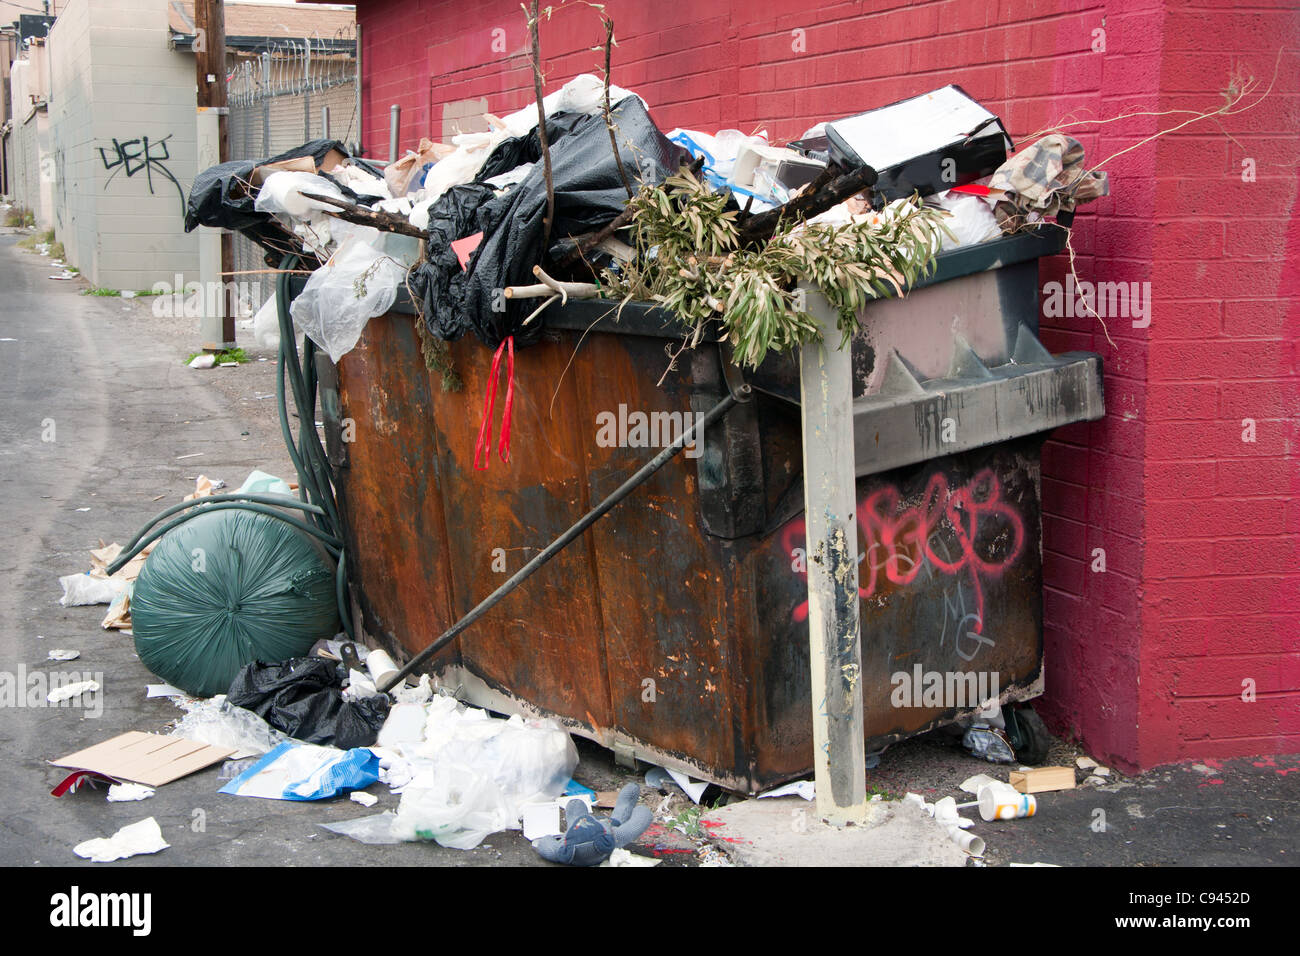 Trash dumpster immagini e fotografie stock ad alta risoluzione - Alamy